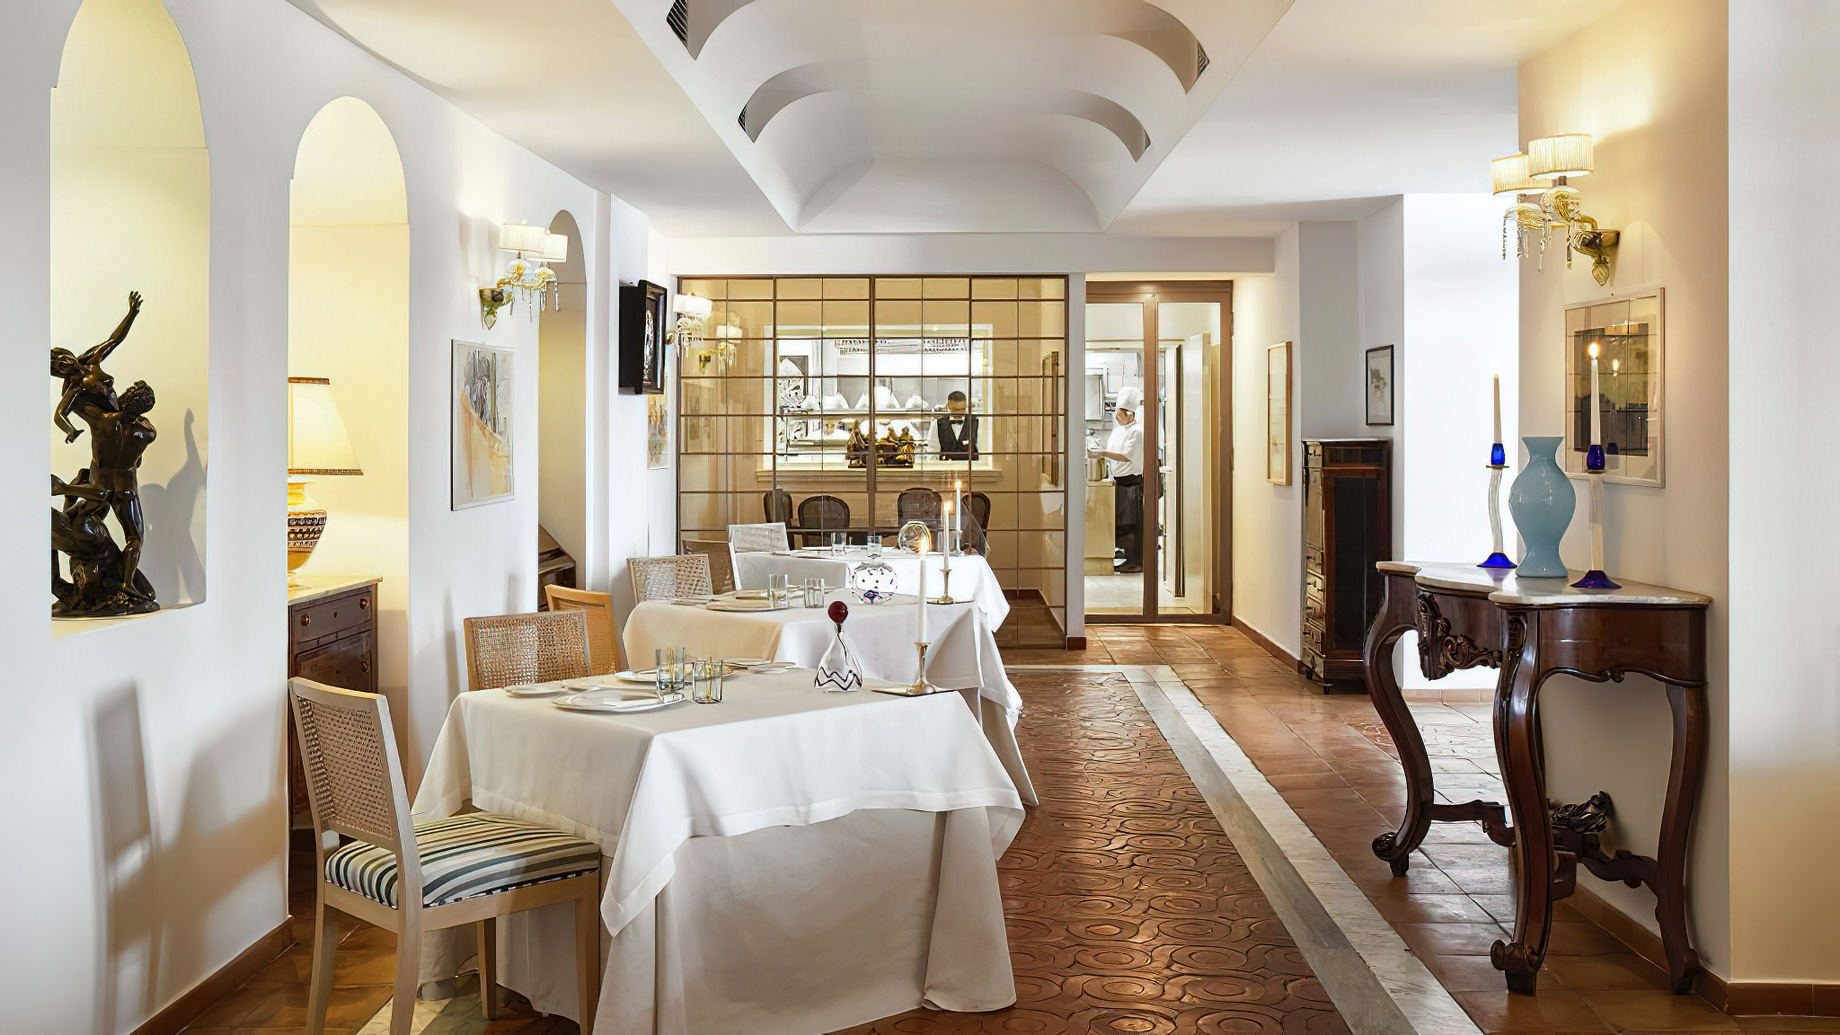 Palazzo Avino Hotel – Amalfi Coast, Ravello, Italy – Chefs Table Restaurant